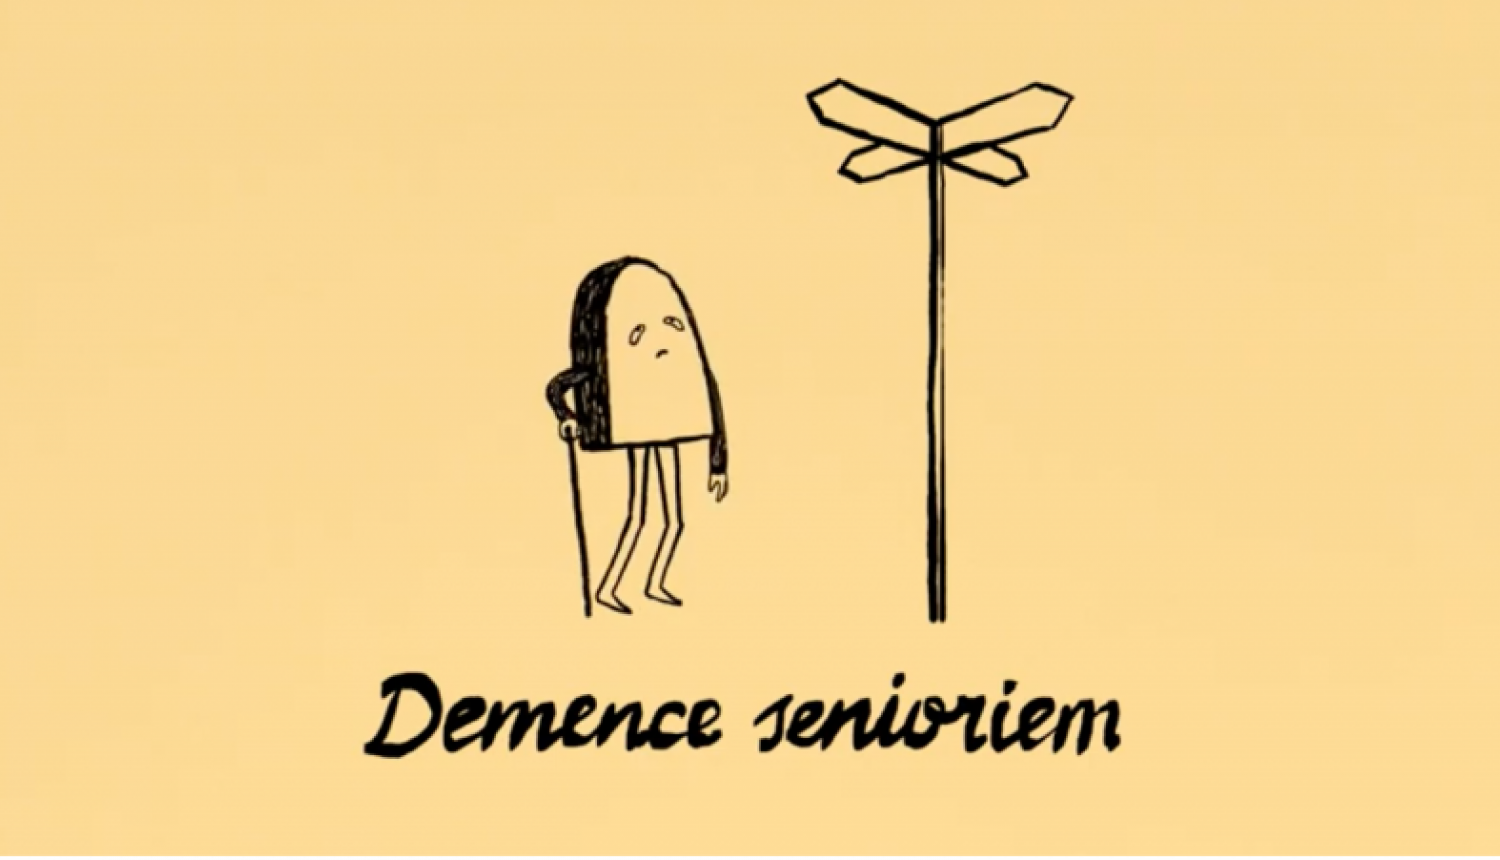 Demence